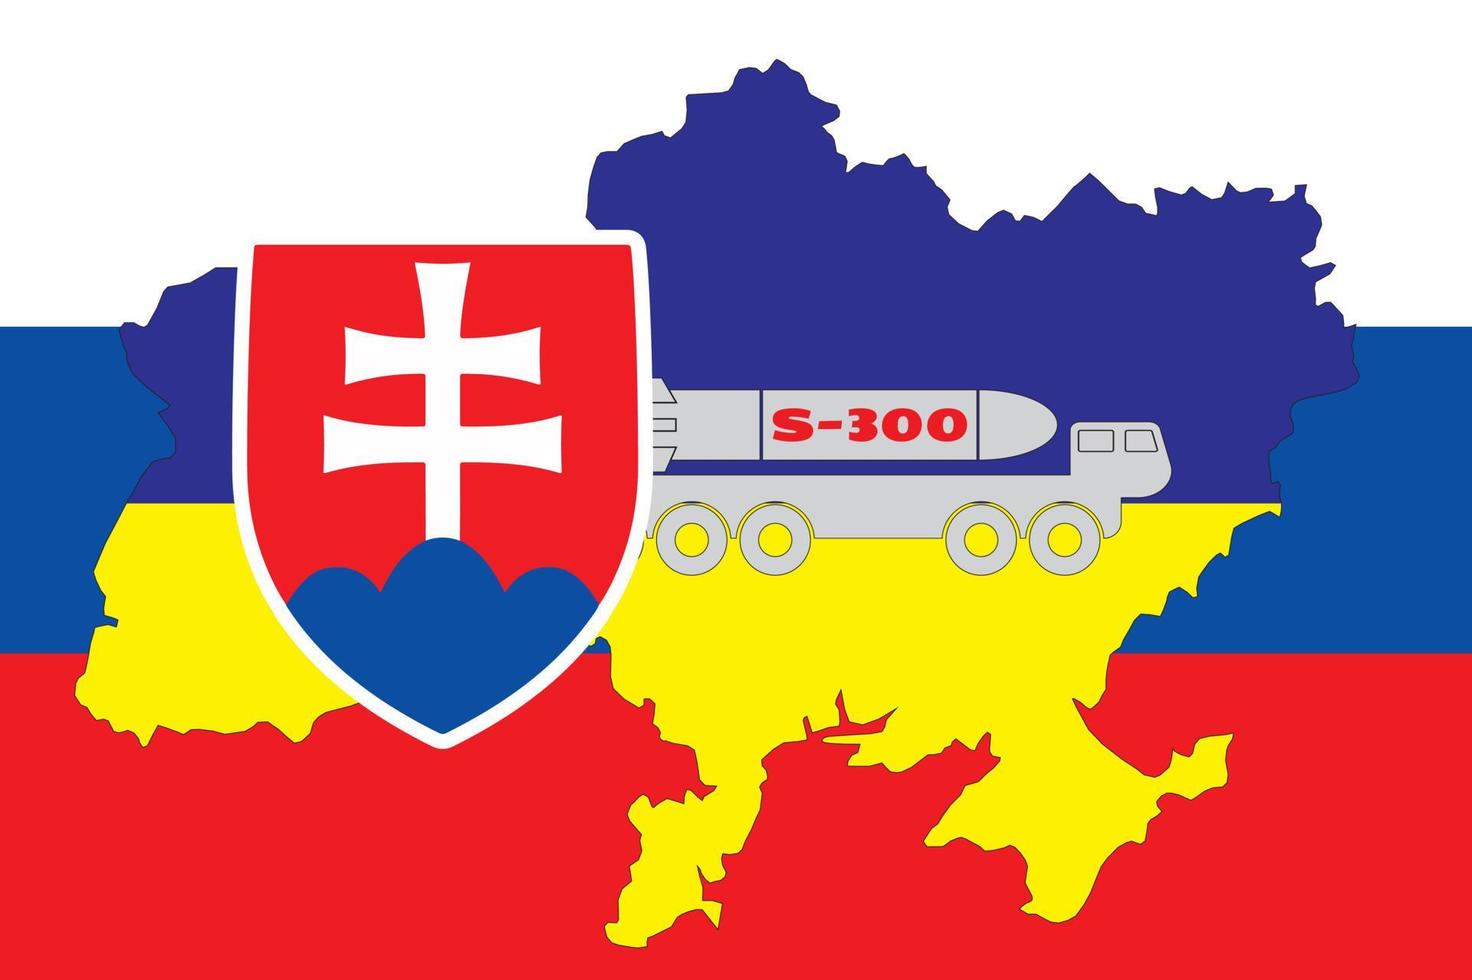 le contour de la carte de l'ukraine est peint aux couleurs du drapeau de l'ukraine sur le drapeau de la slovaquie et l'installation de s-300. illustration vectorielle vecteur